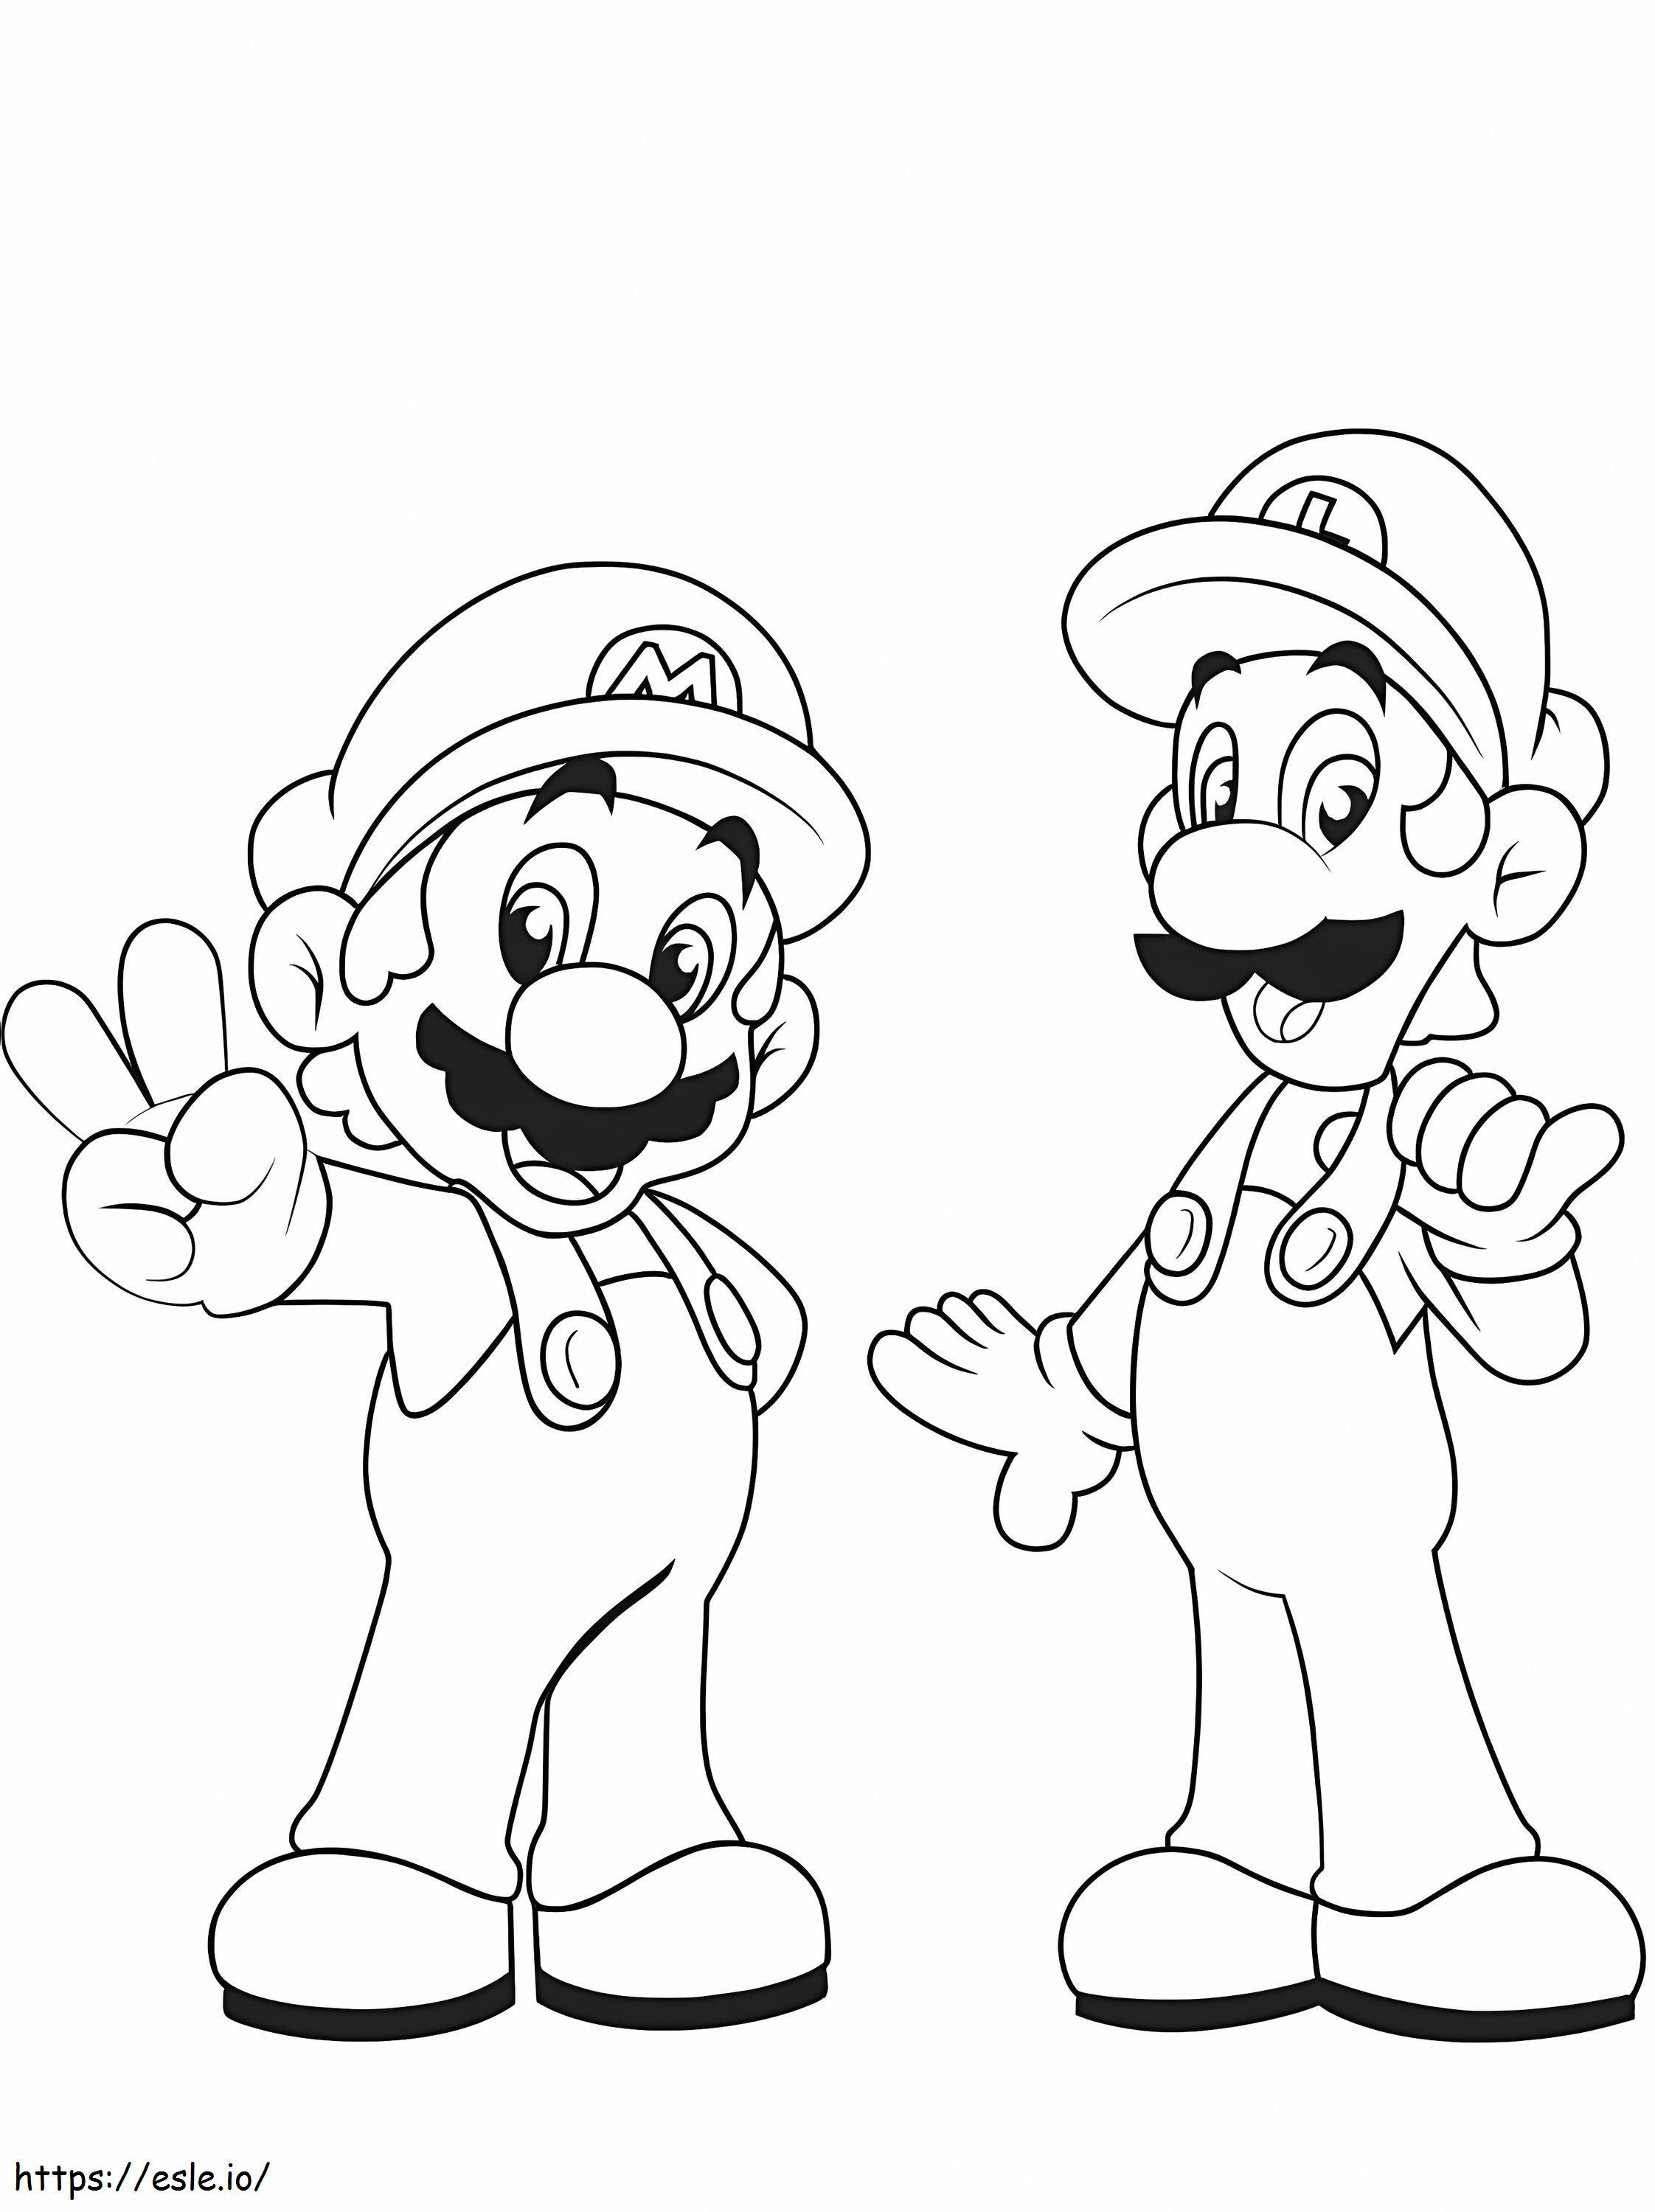 Coloriage Mario et Luigi à imprimer dessin